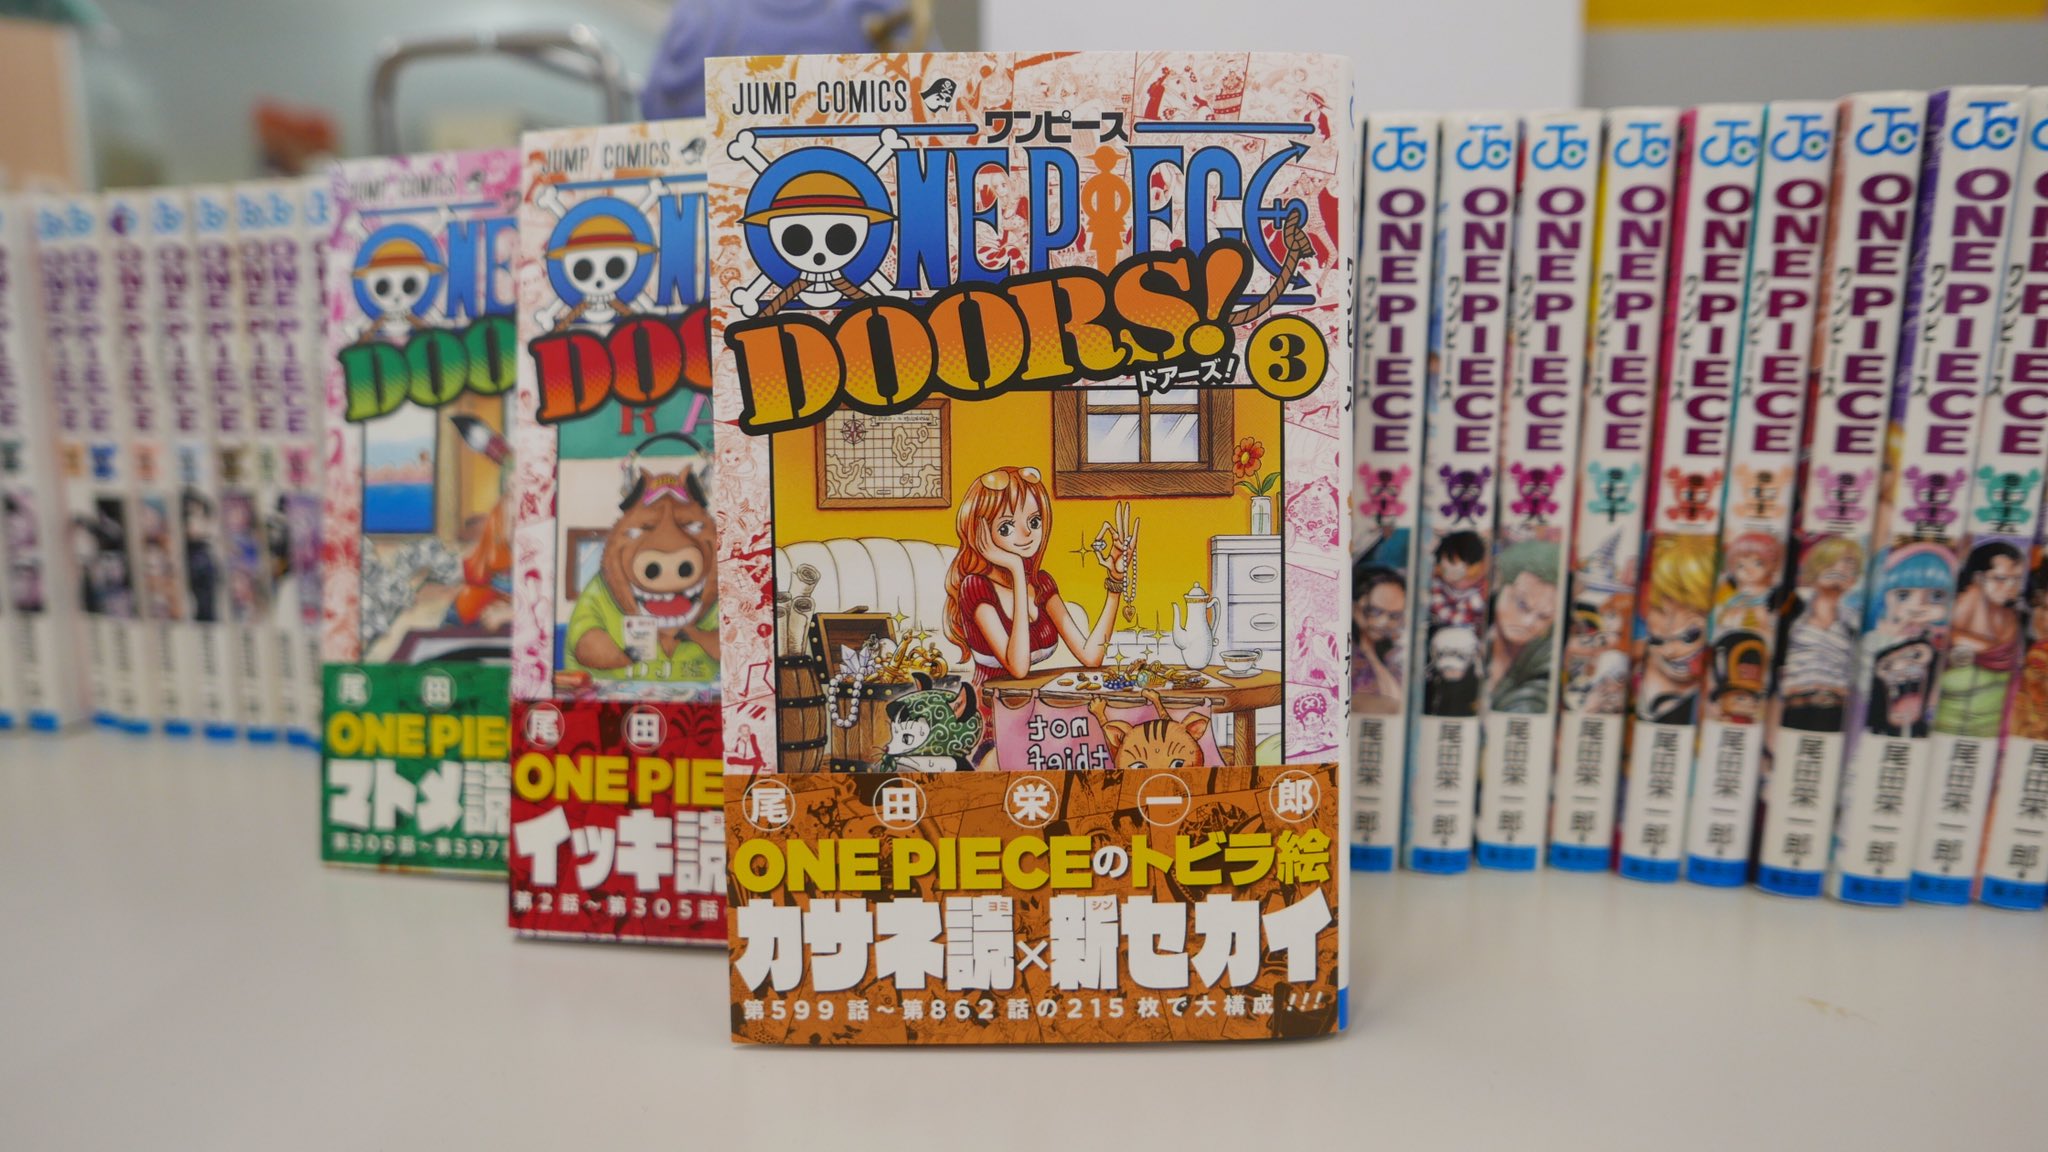 One Piece スタッフ 公式 Official こちら 本編扉絵をまとめた Doors の3巻も本日同時発売 今回はカリブーやジンベエの連載シリーズなどを収録 本編に繋がる解説も手厚く One Pieceをより楽しめる一冊 一緒にどうぞ T Co